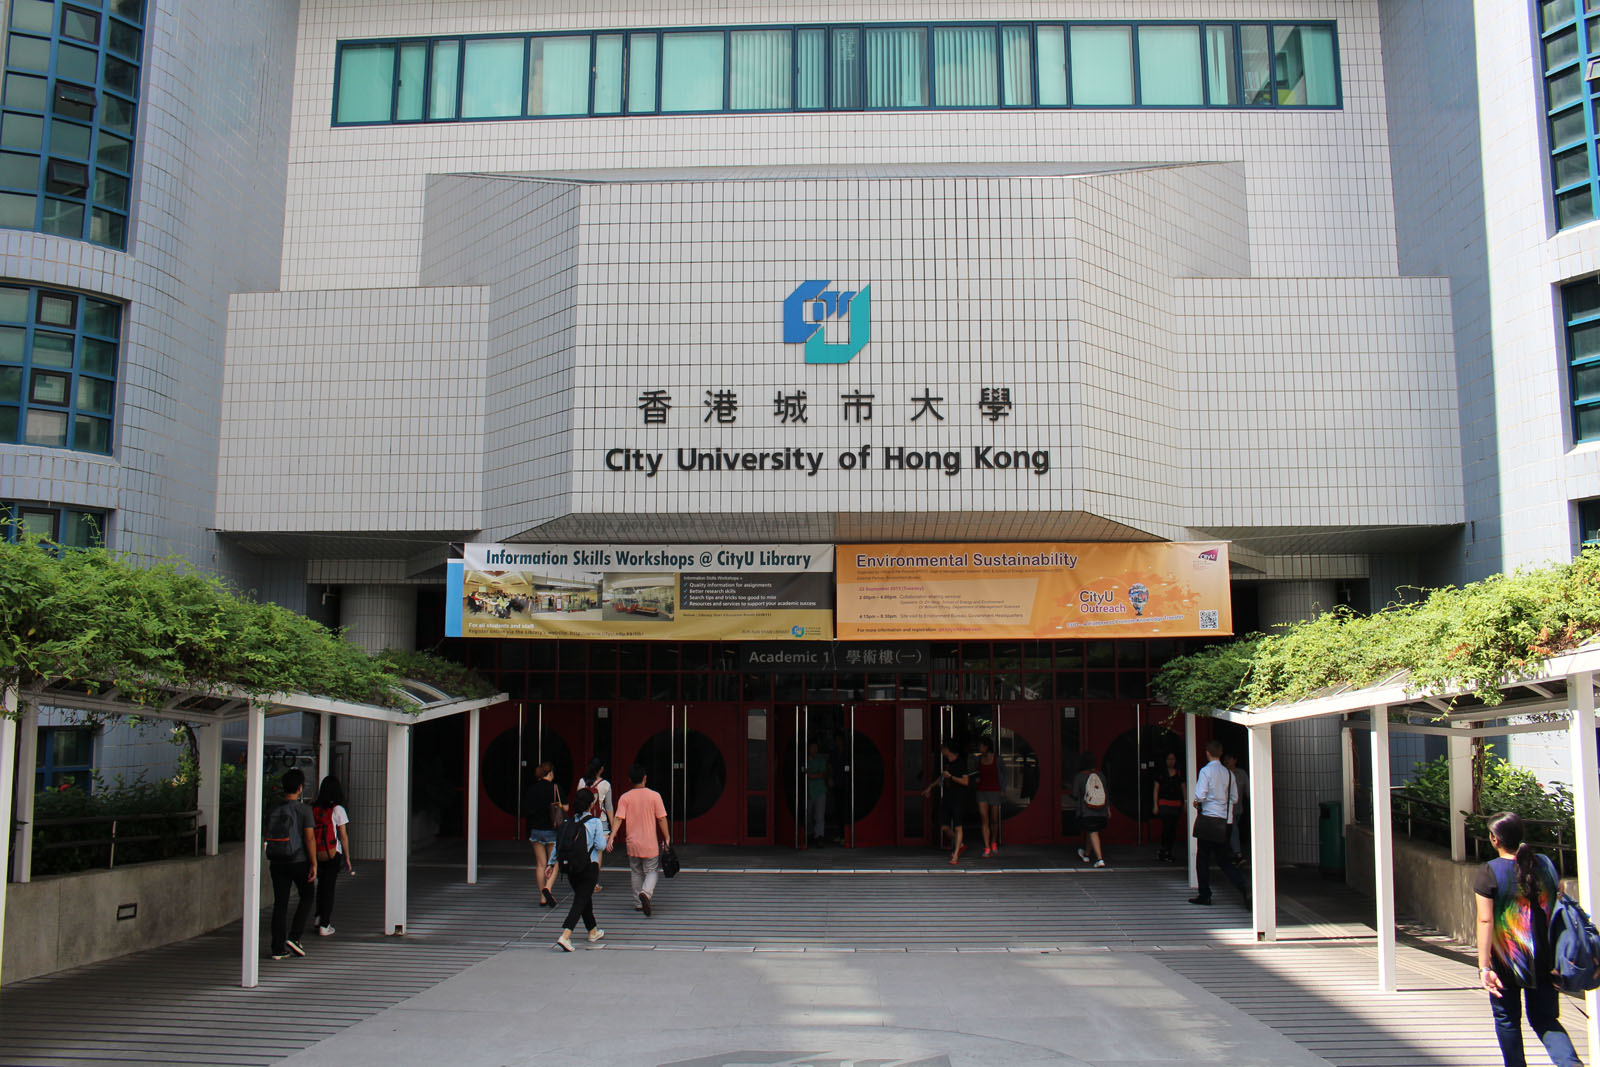 Photo 4: City University of Hong Kong